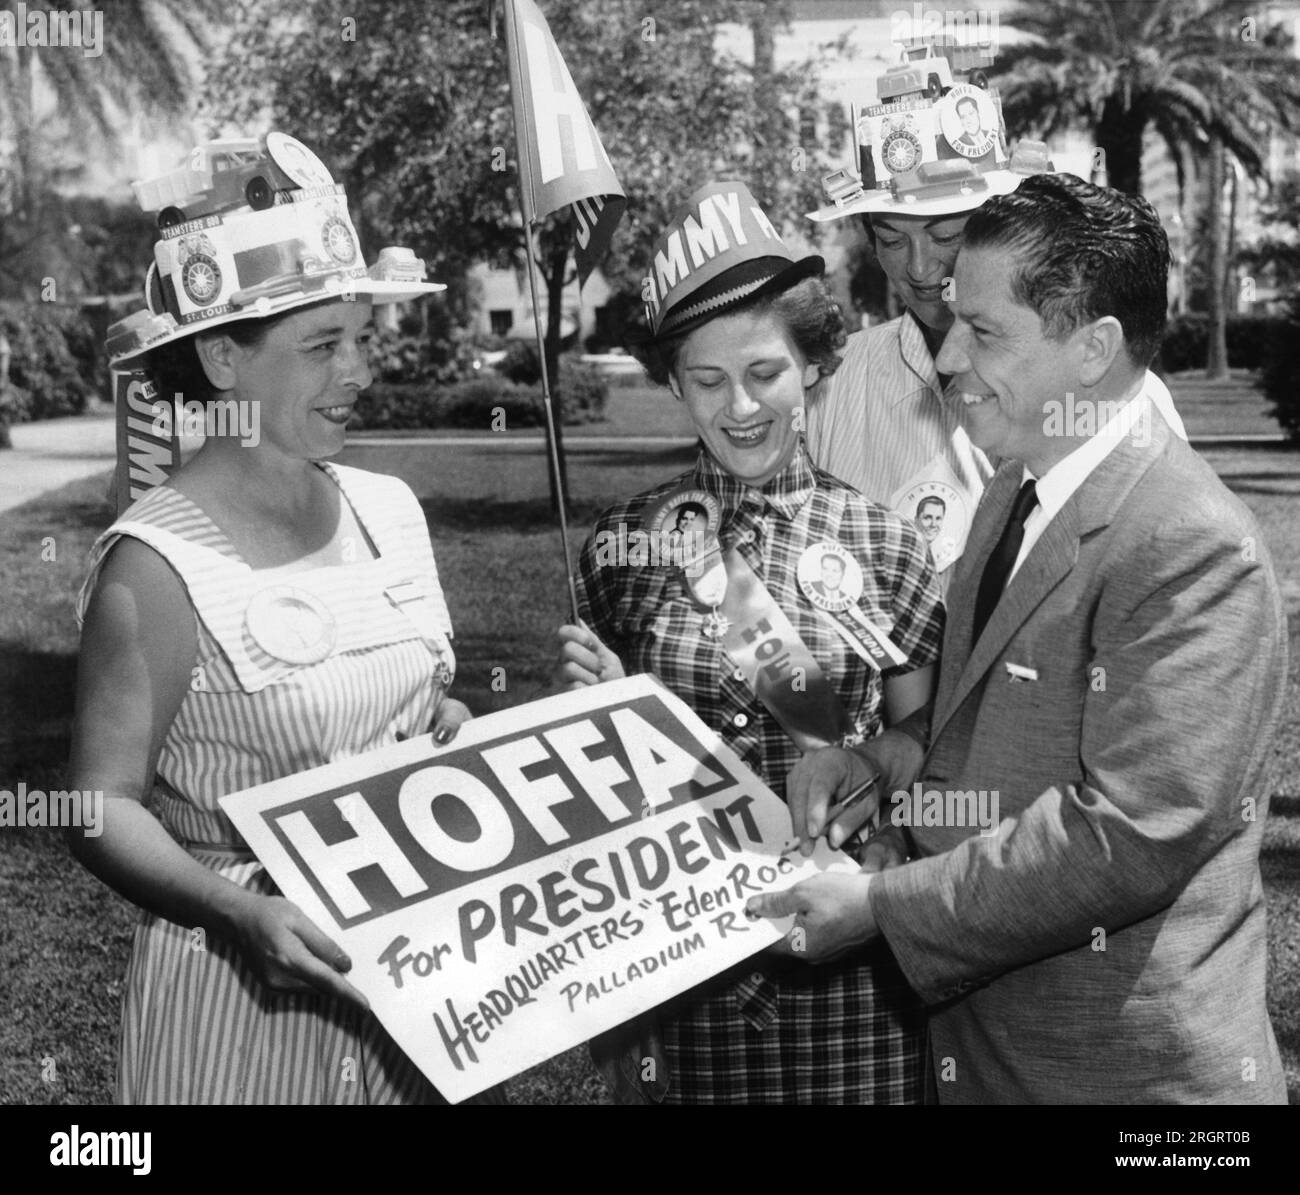 Miami Beach, Floride : 1 octobre 1957 le vice-président du syndicat des Teamsters Jimmy Hoffa lui a écrit une pancarte pour un groupe de femmes faisant campagne pour sa course à la présidence des Teamsters. Banque D'Images